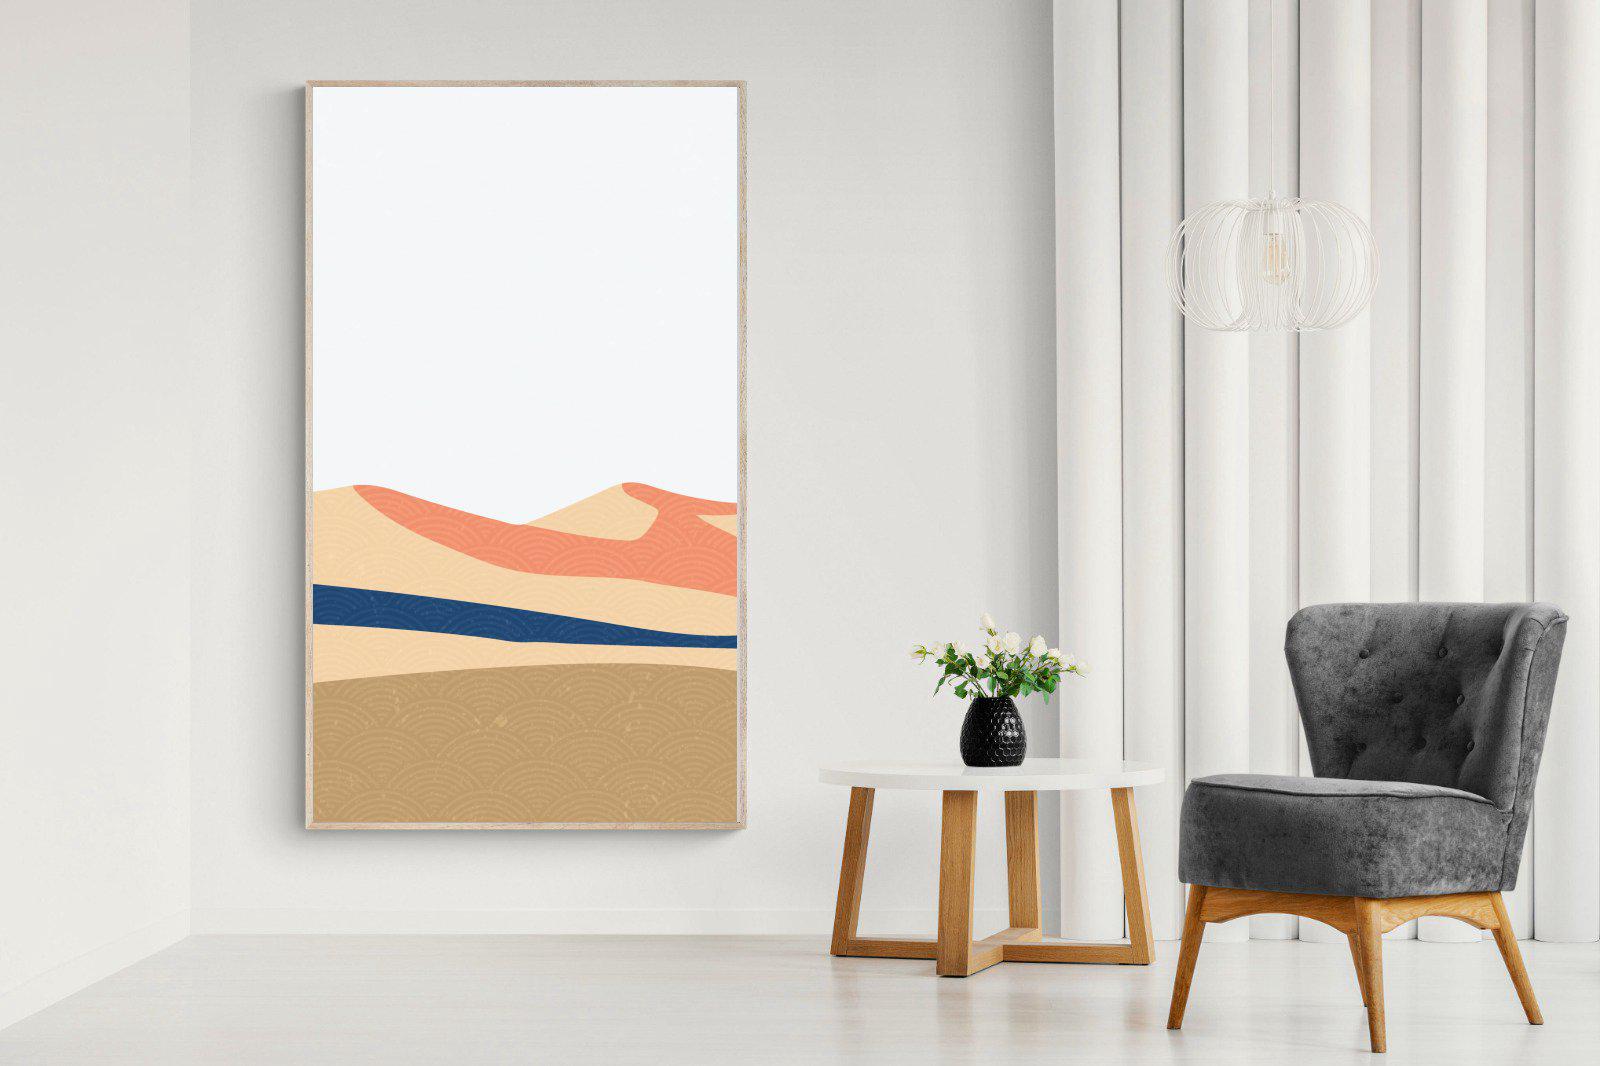 Frederik-Wall_Art-130 x 220cm-Mounted Canvas-Wood-Pixalot